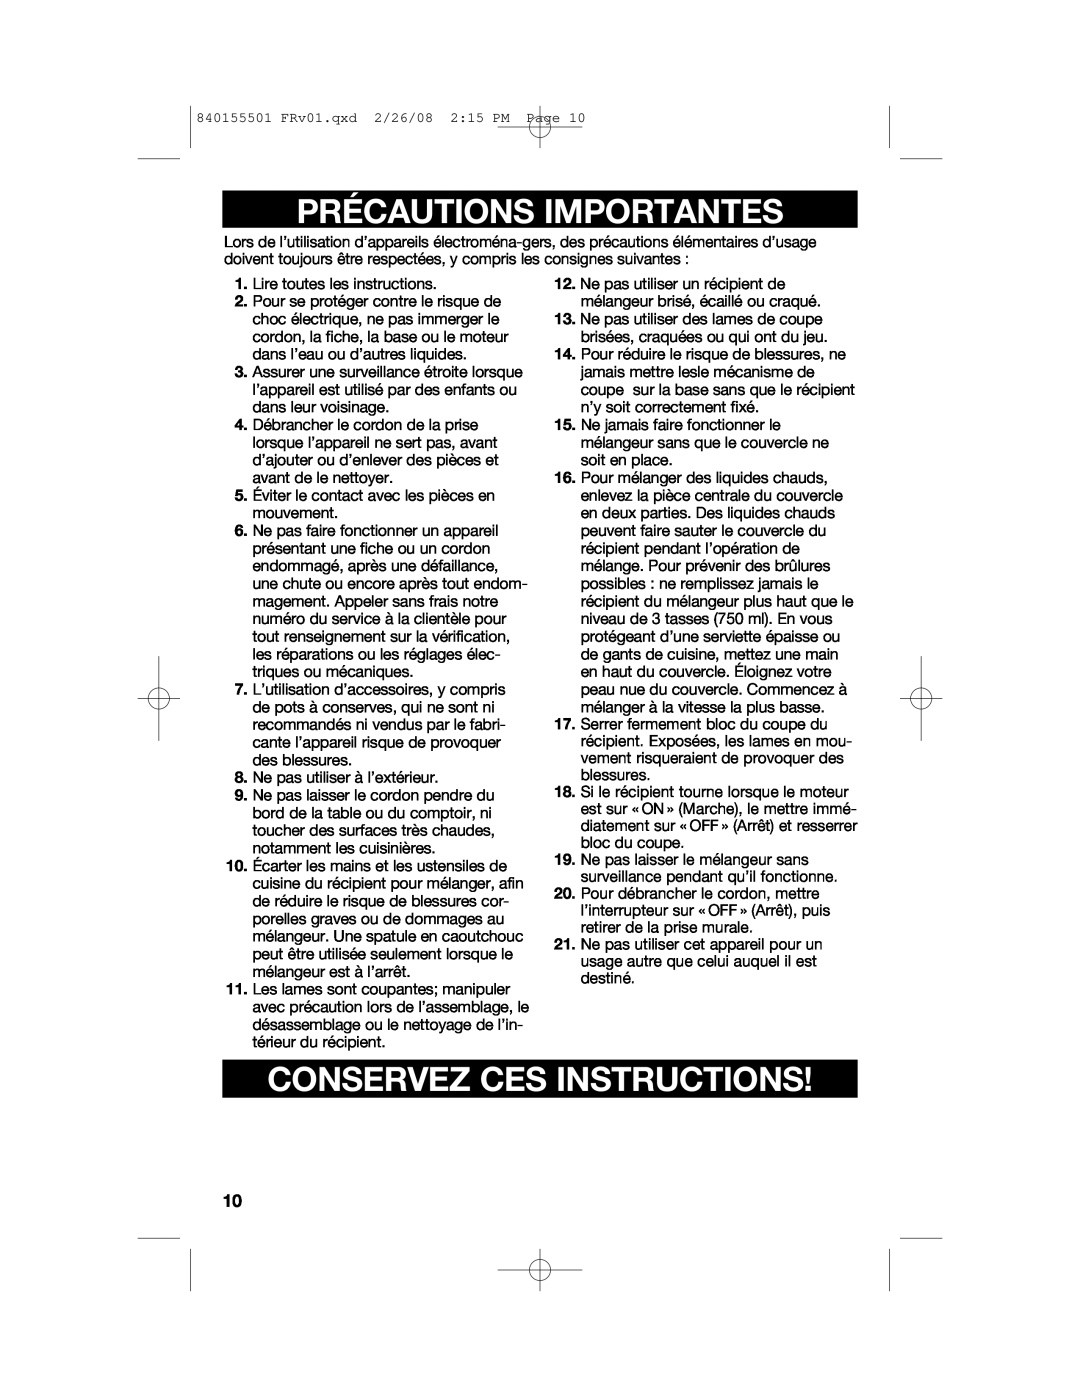 Hamilton Beach 54616C manual Précautions Importantes, Conservez Ces Instructions 